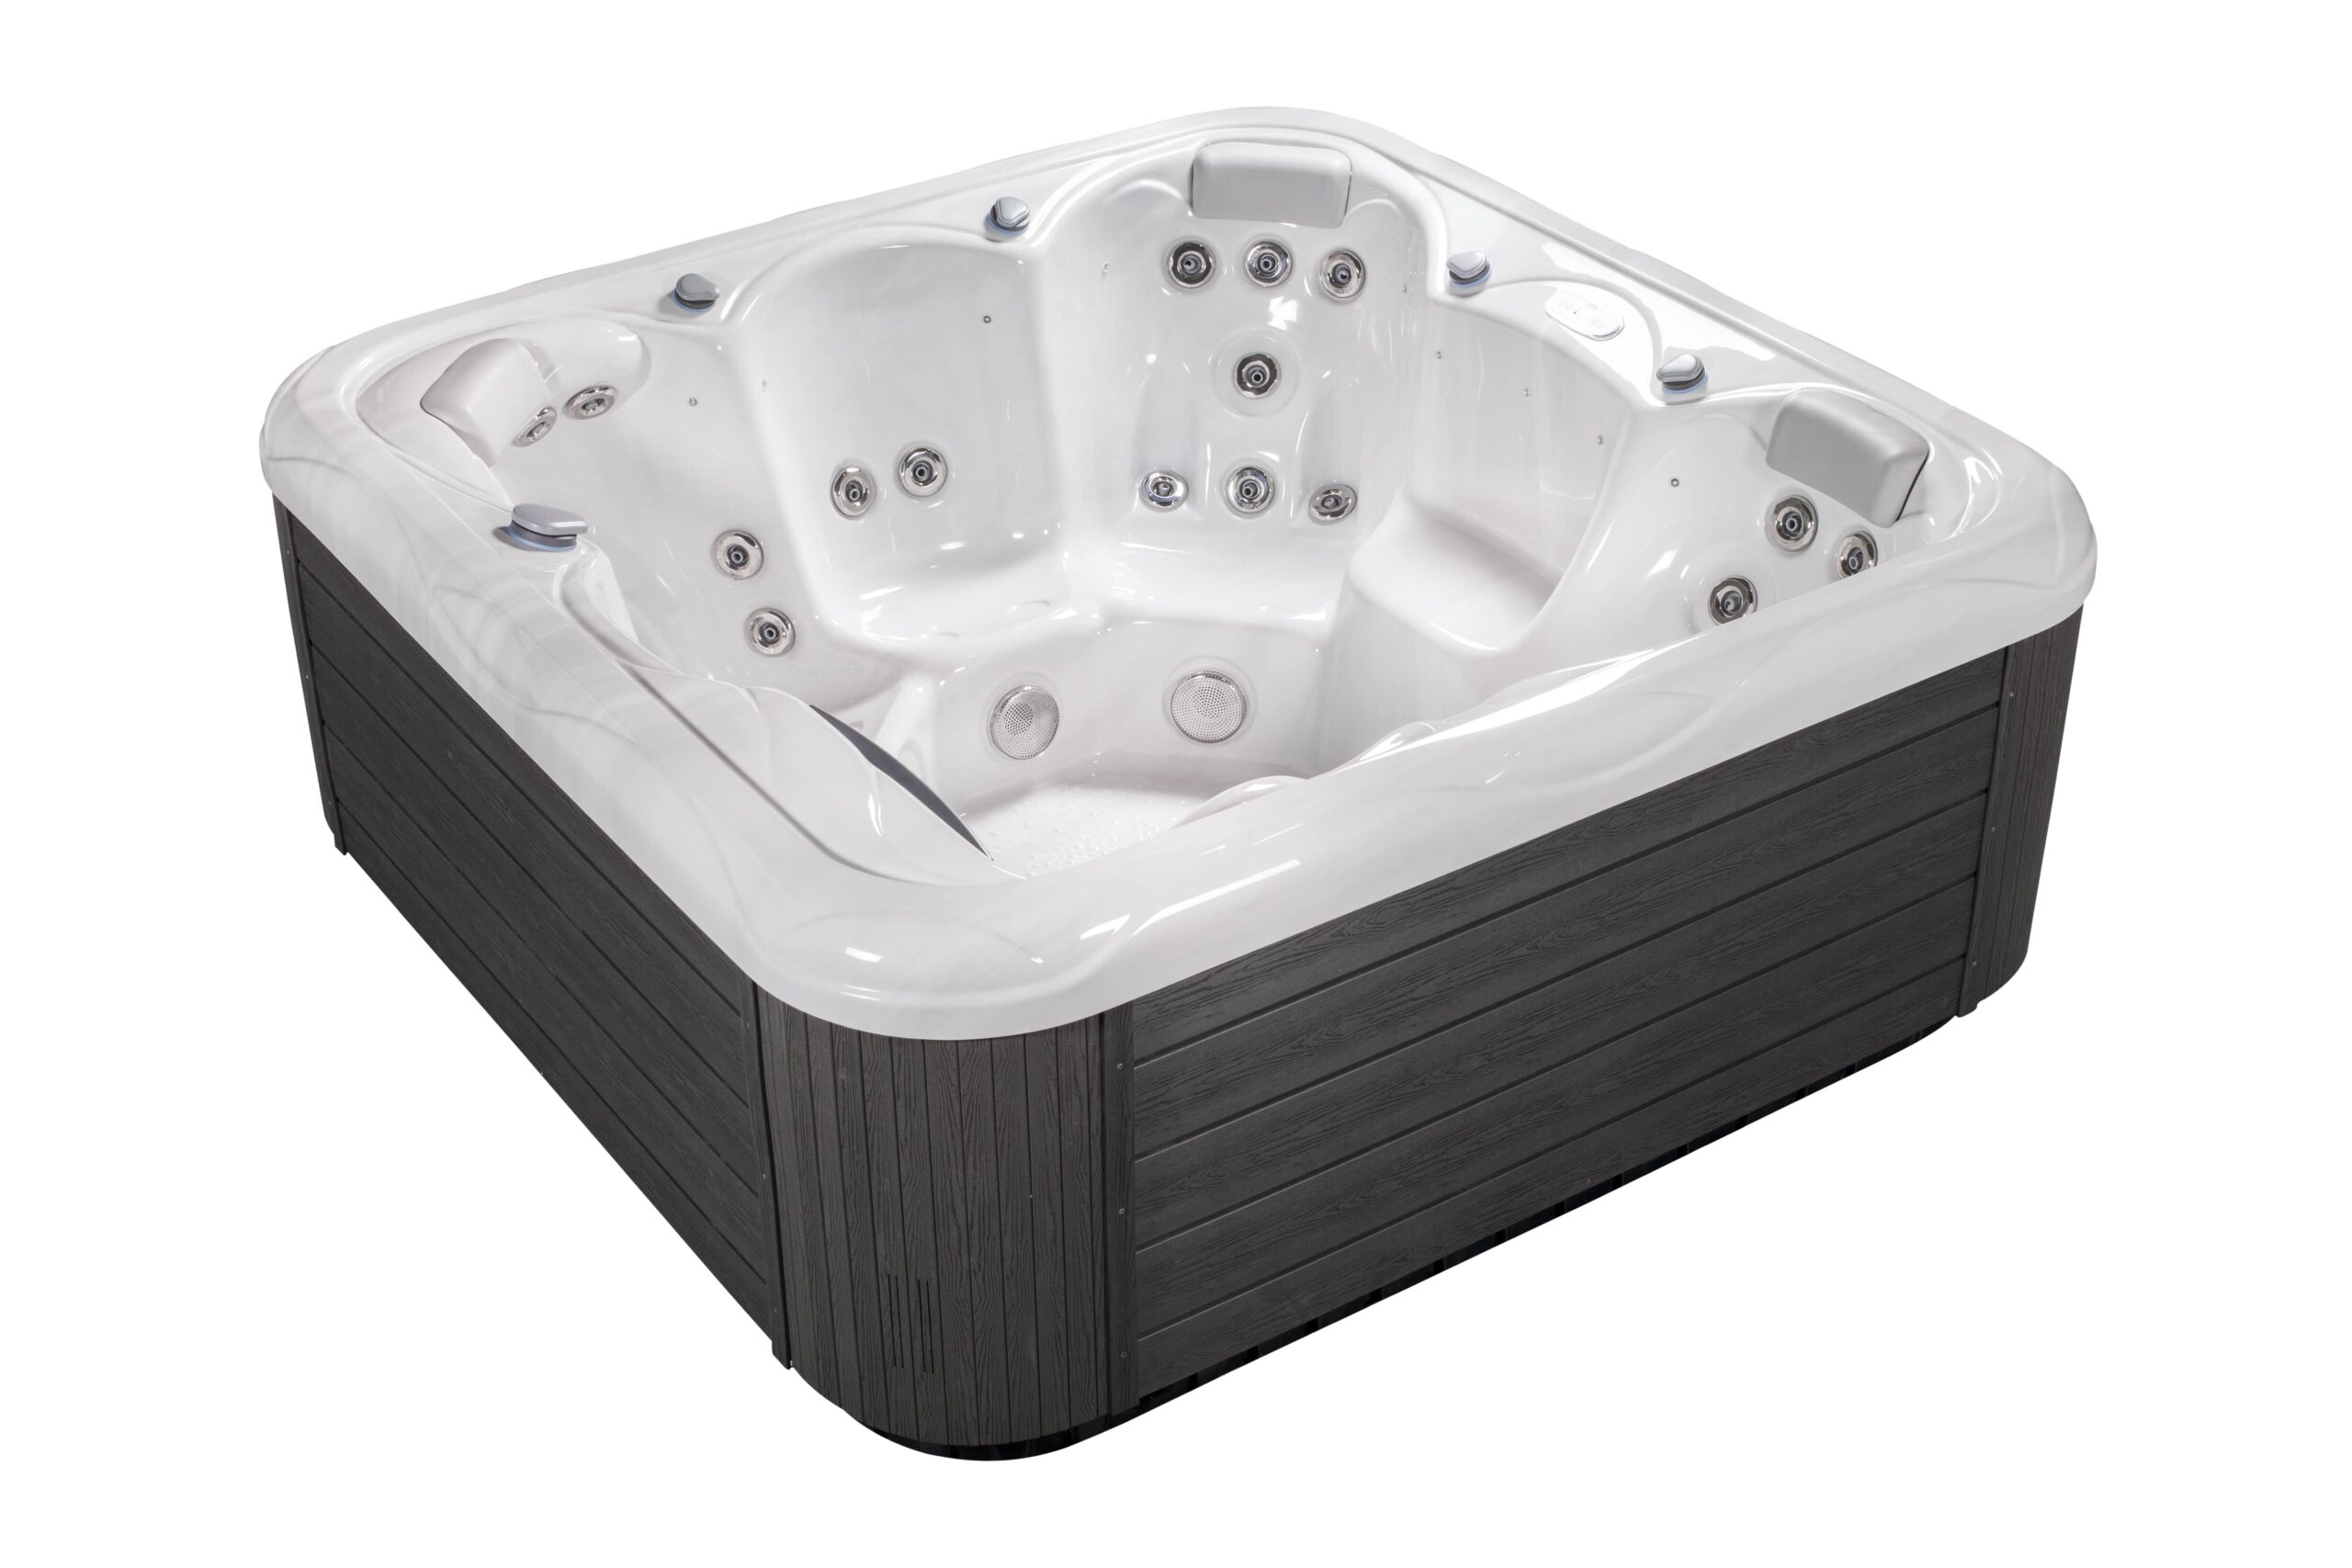 Large luxury hot tub